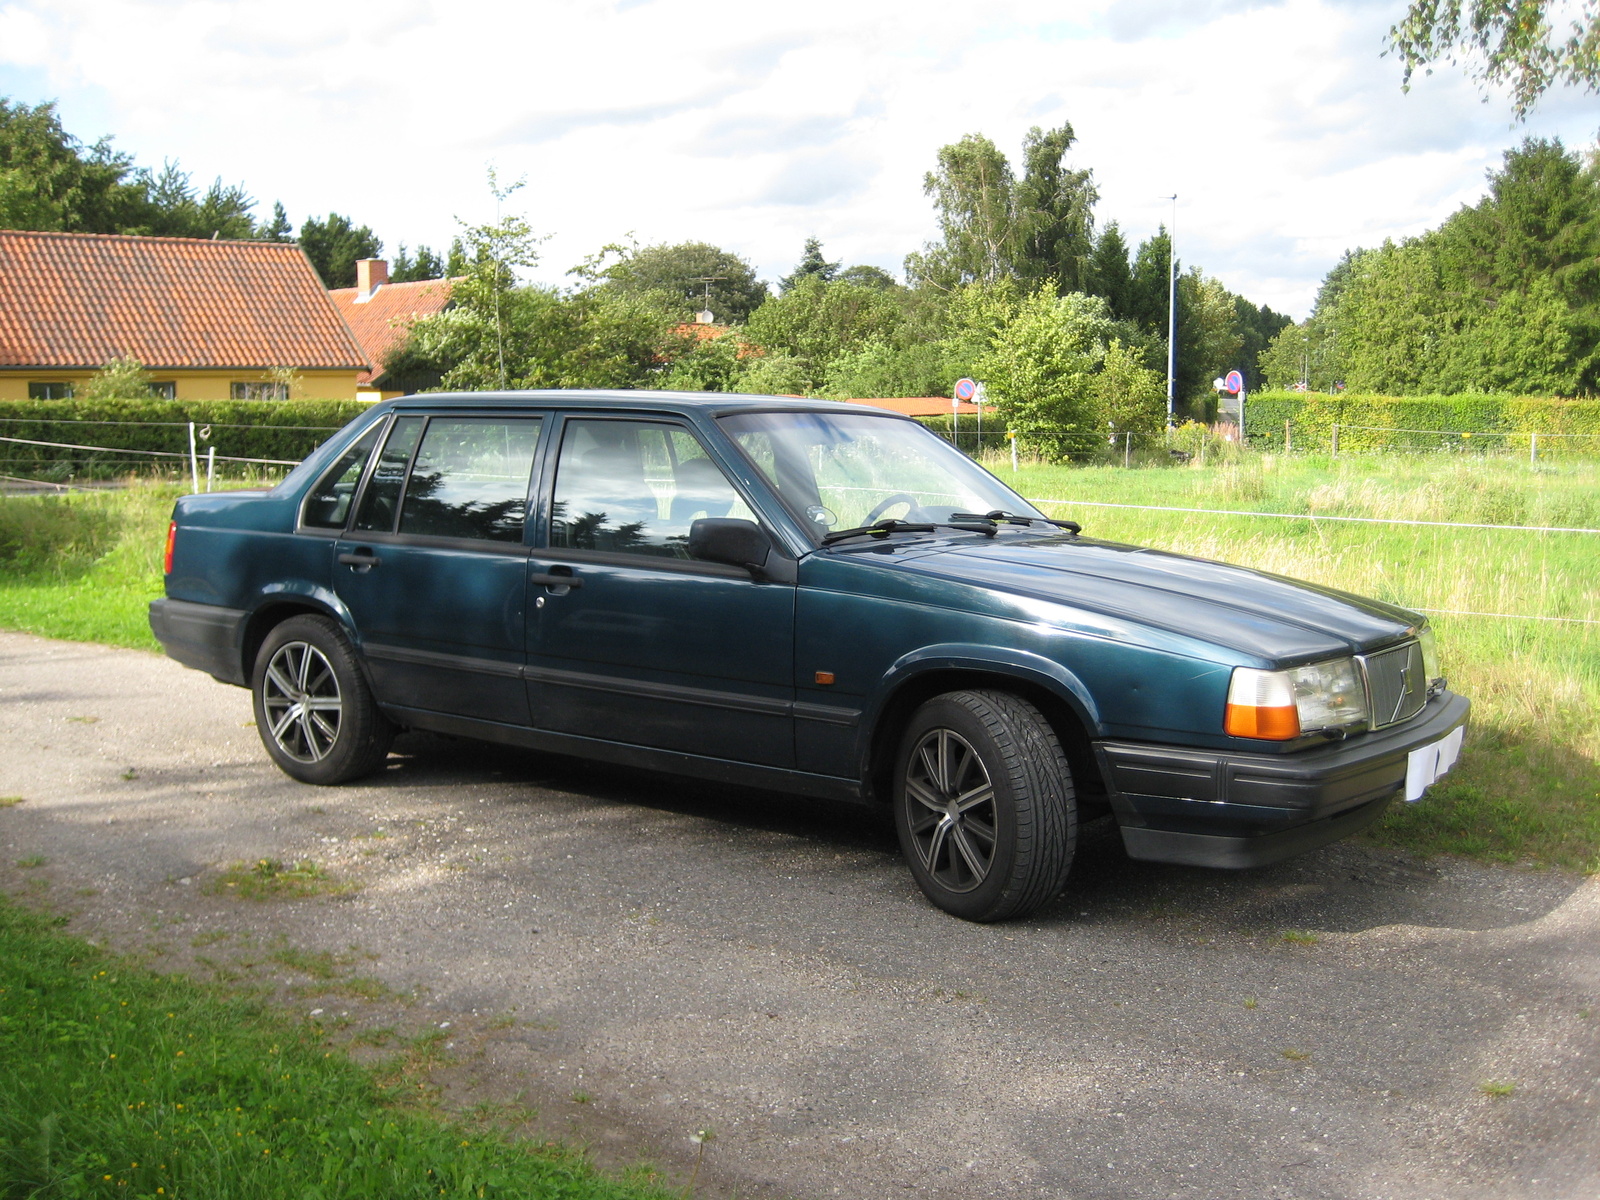 La Volvo 940 de 1994 est fabriquée par Volvo. Cette voiture a été présentée pour la première fois